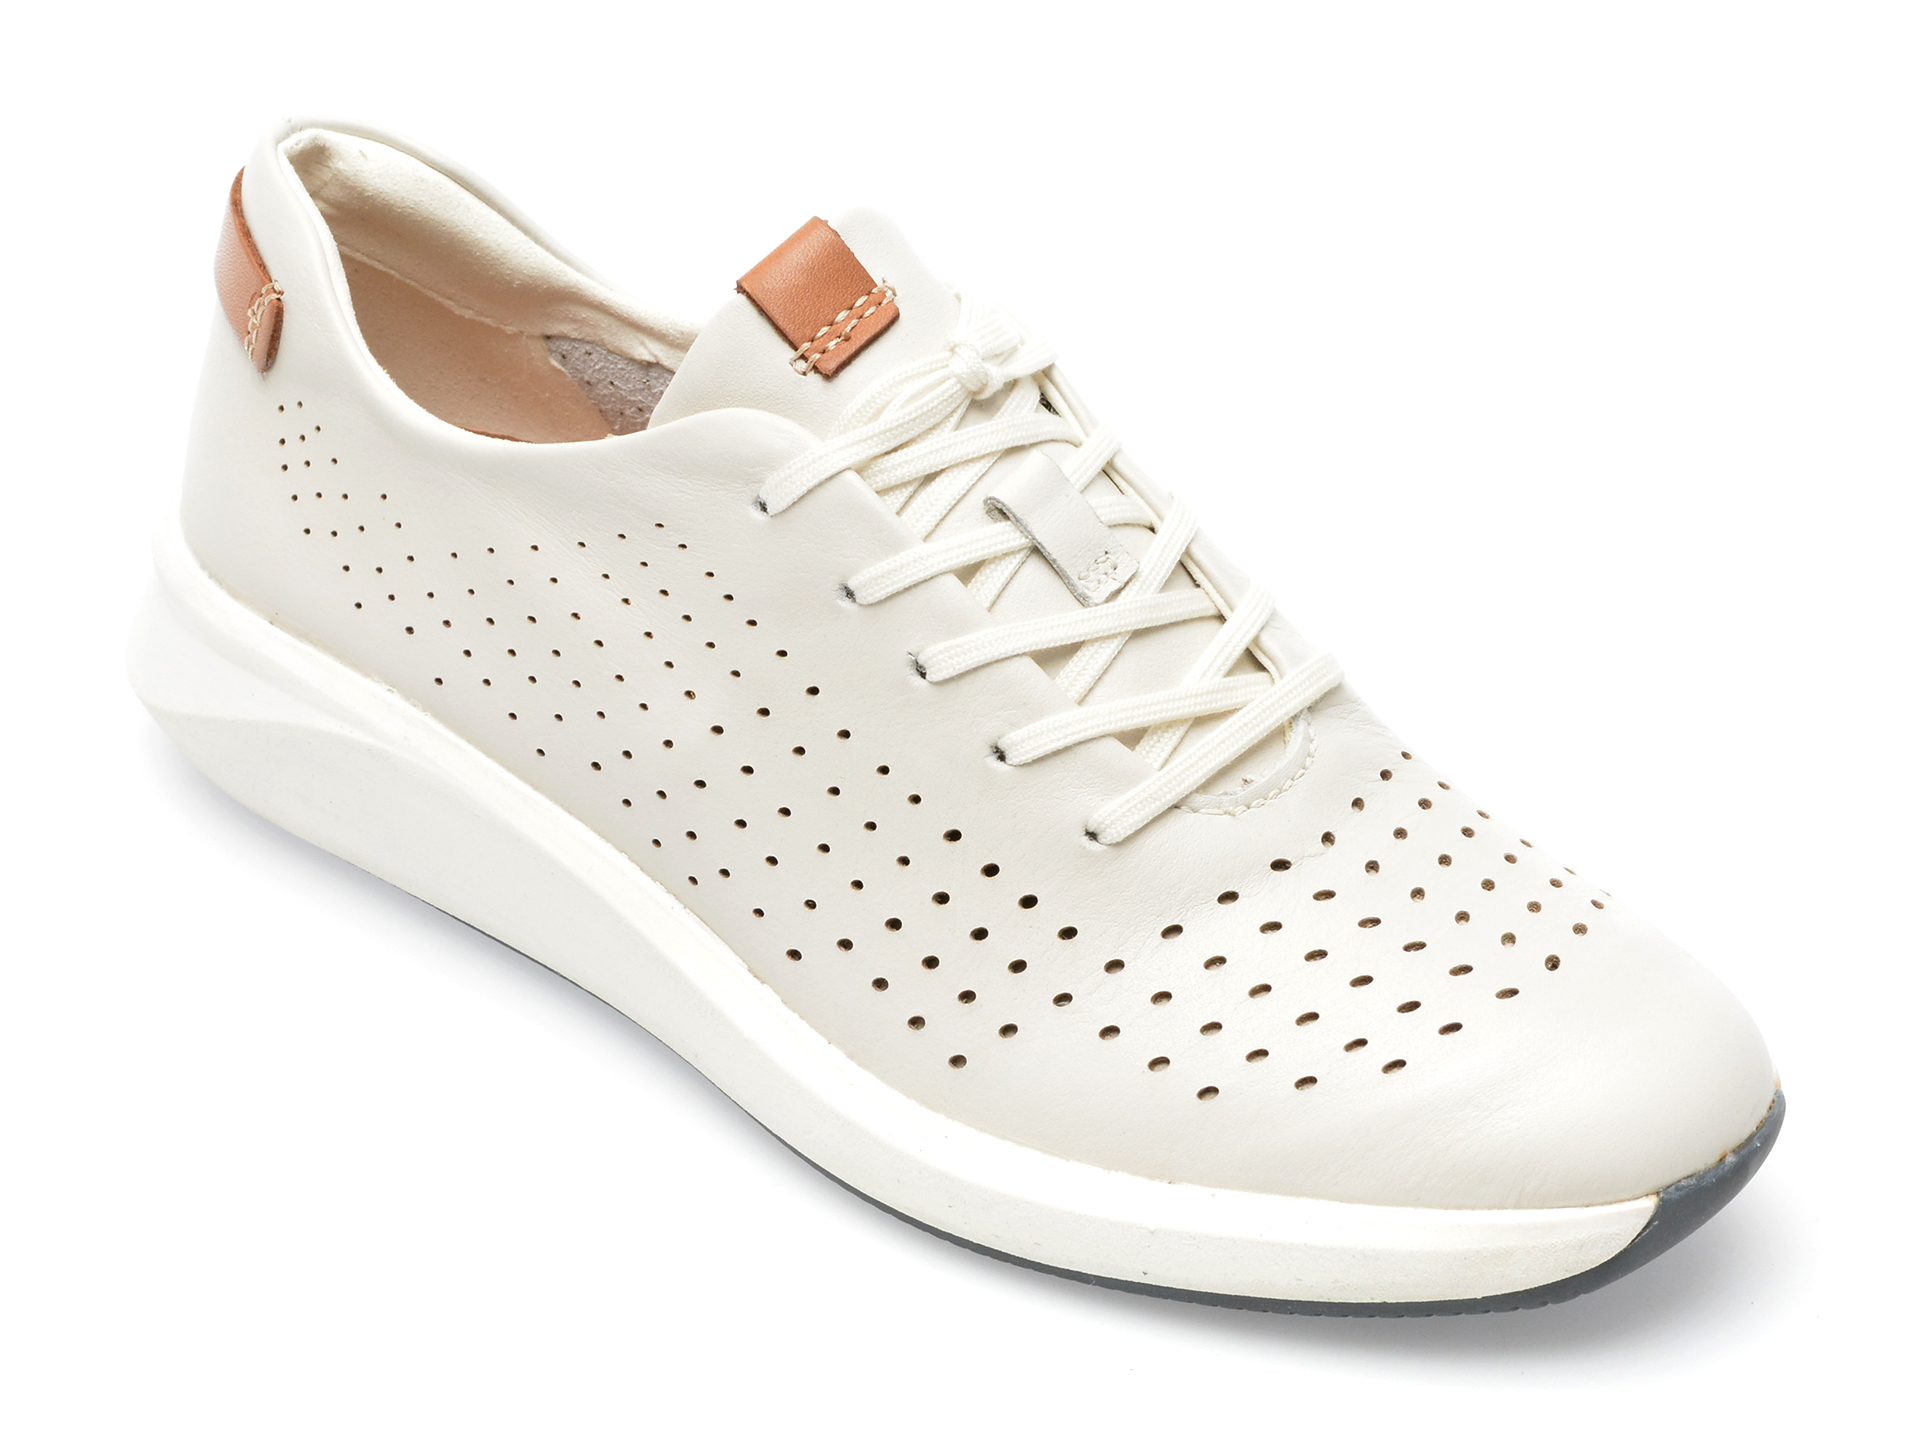 Pantofi CLARKS albi, UNRIOTI, din piele naturala /femei/pantofi imagine noua